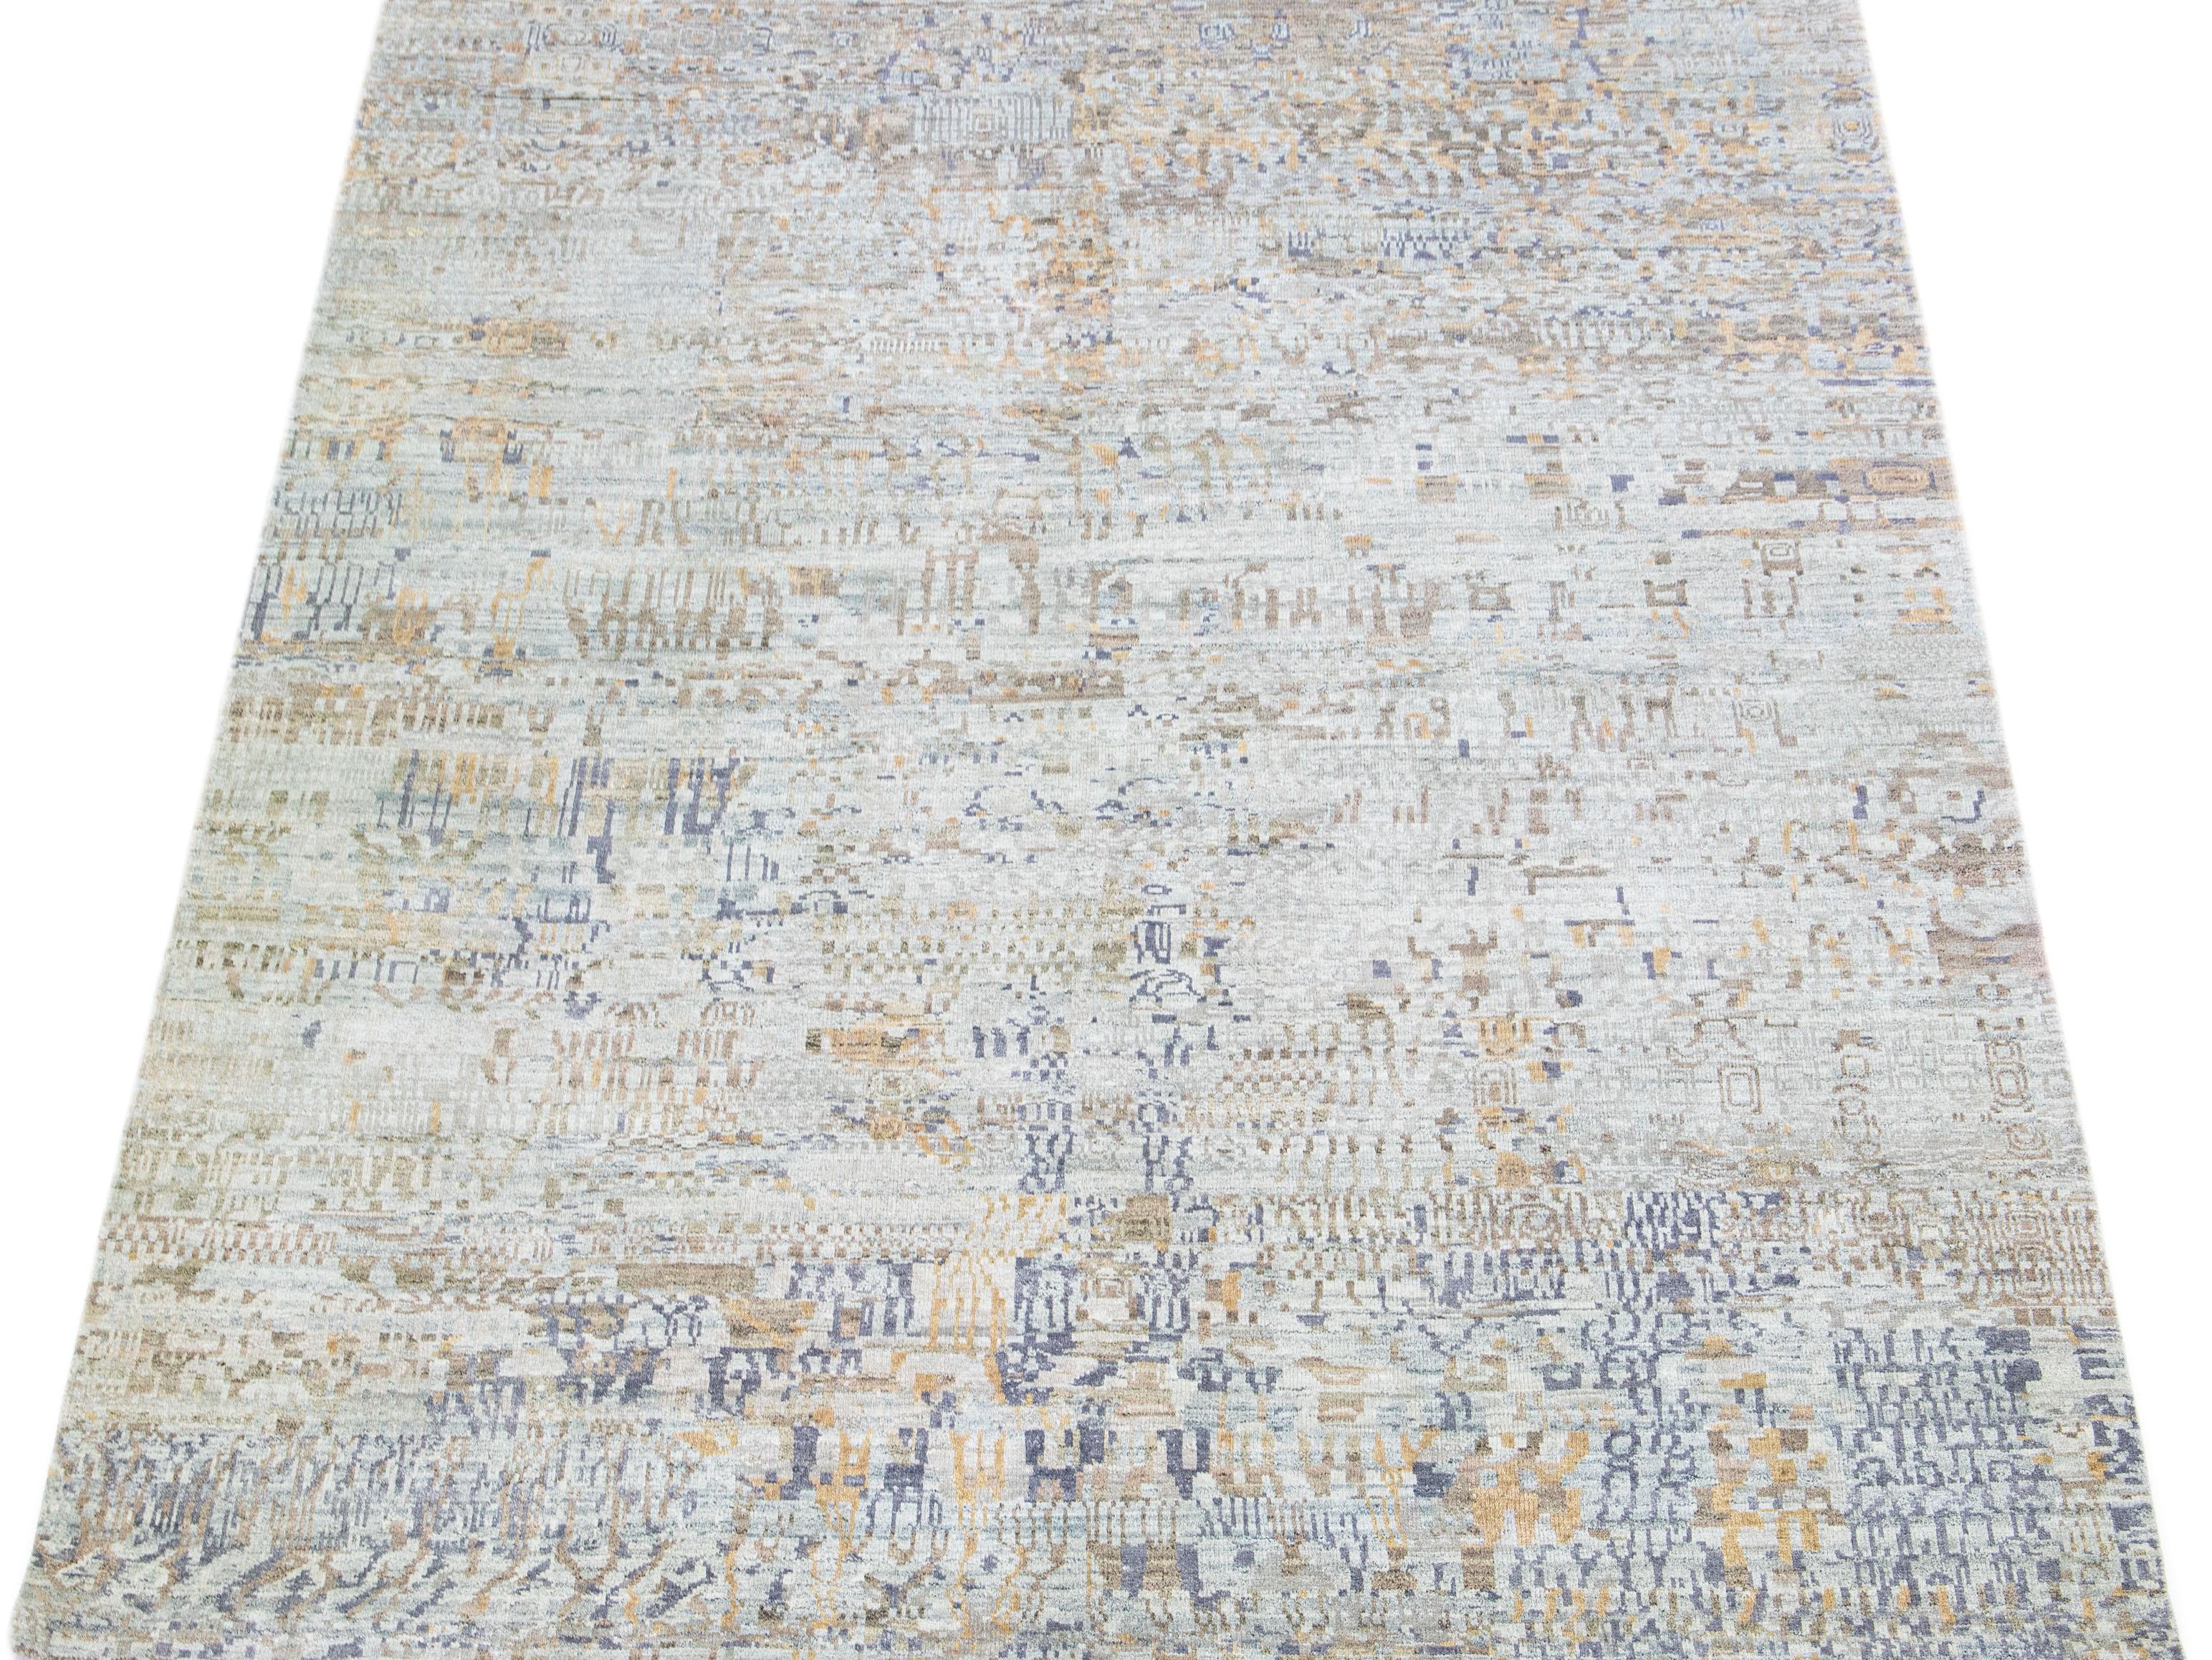 Das zeitgenössische Design dieses Teppichs aus Wolle und Seide zeigt ein faszinierendes Tribal-Motiv in einem zarten Grauton. Die hellbraunen Akzente unterstreichen das abstrakte Muster auf einzigartige Weise.

Dieser Teppich misst 7'10